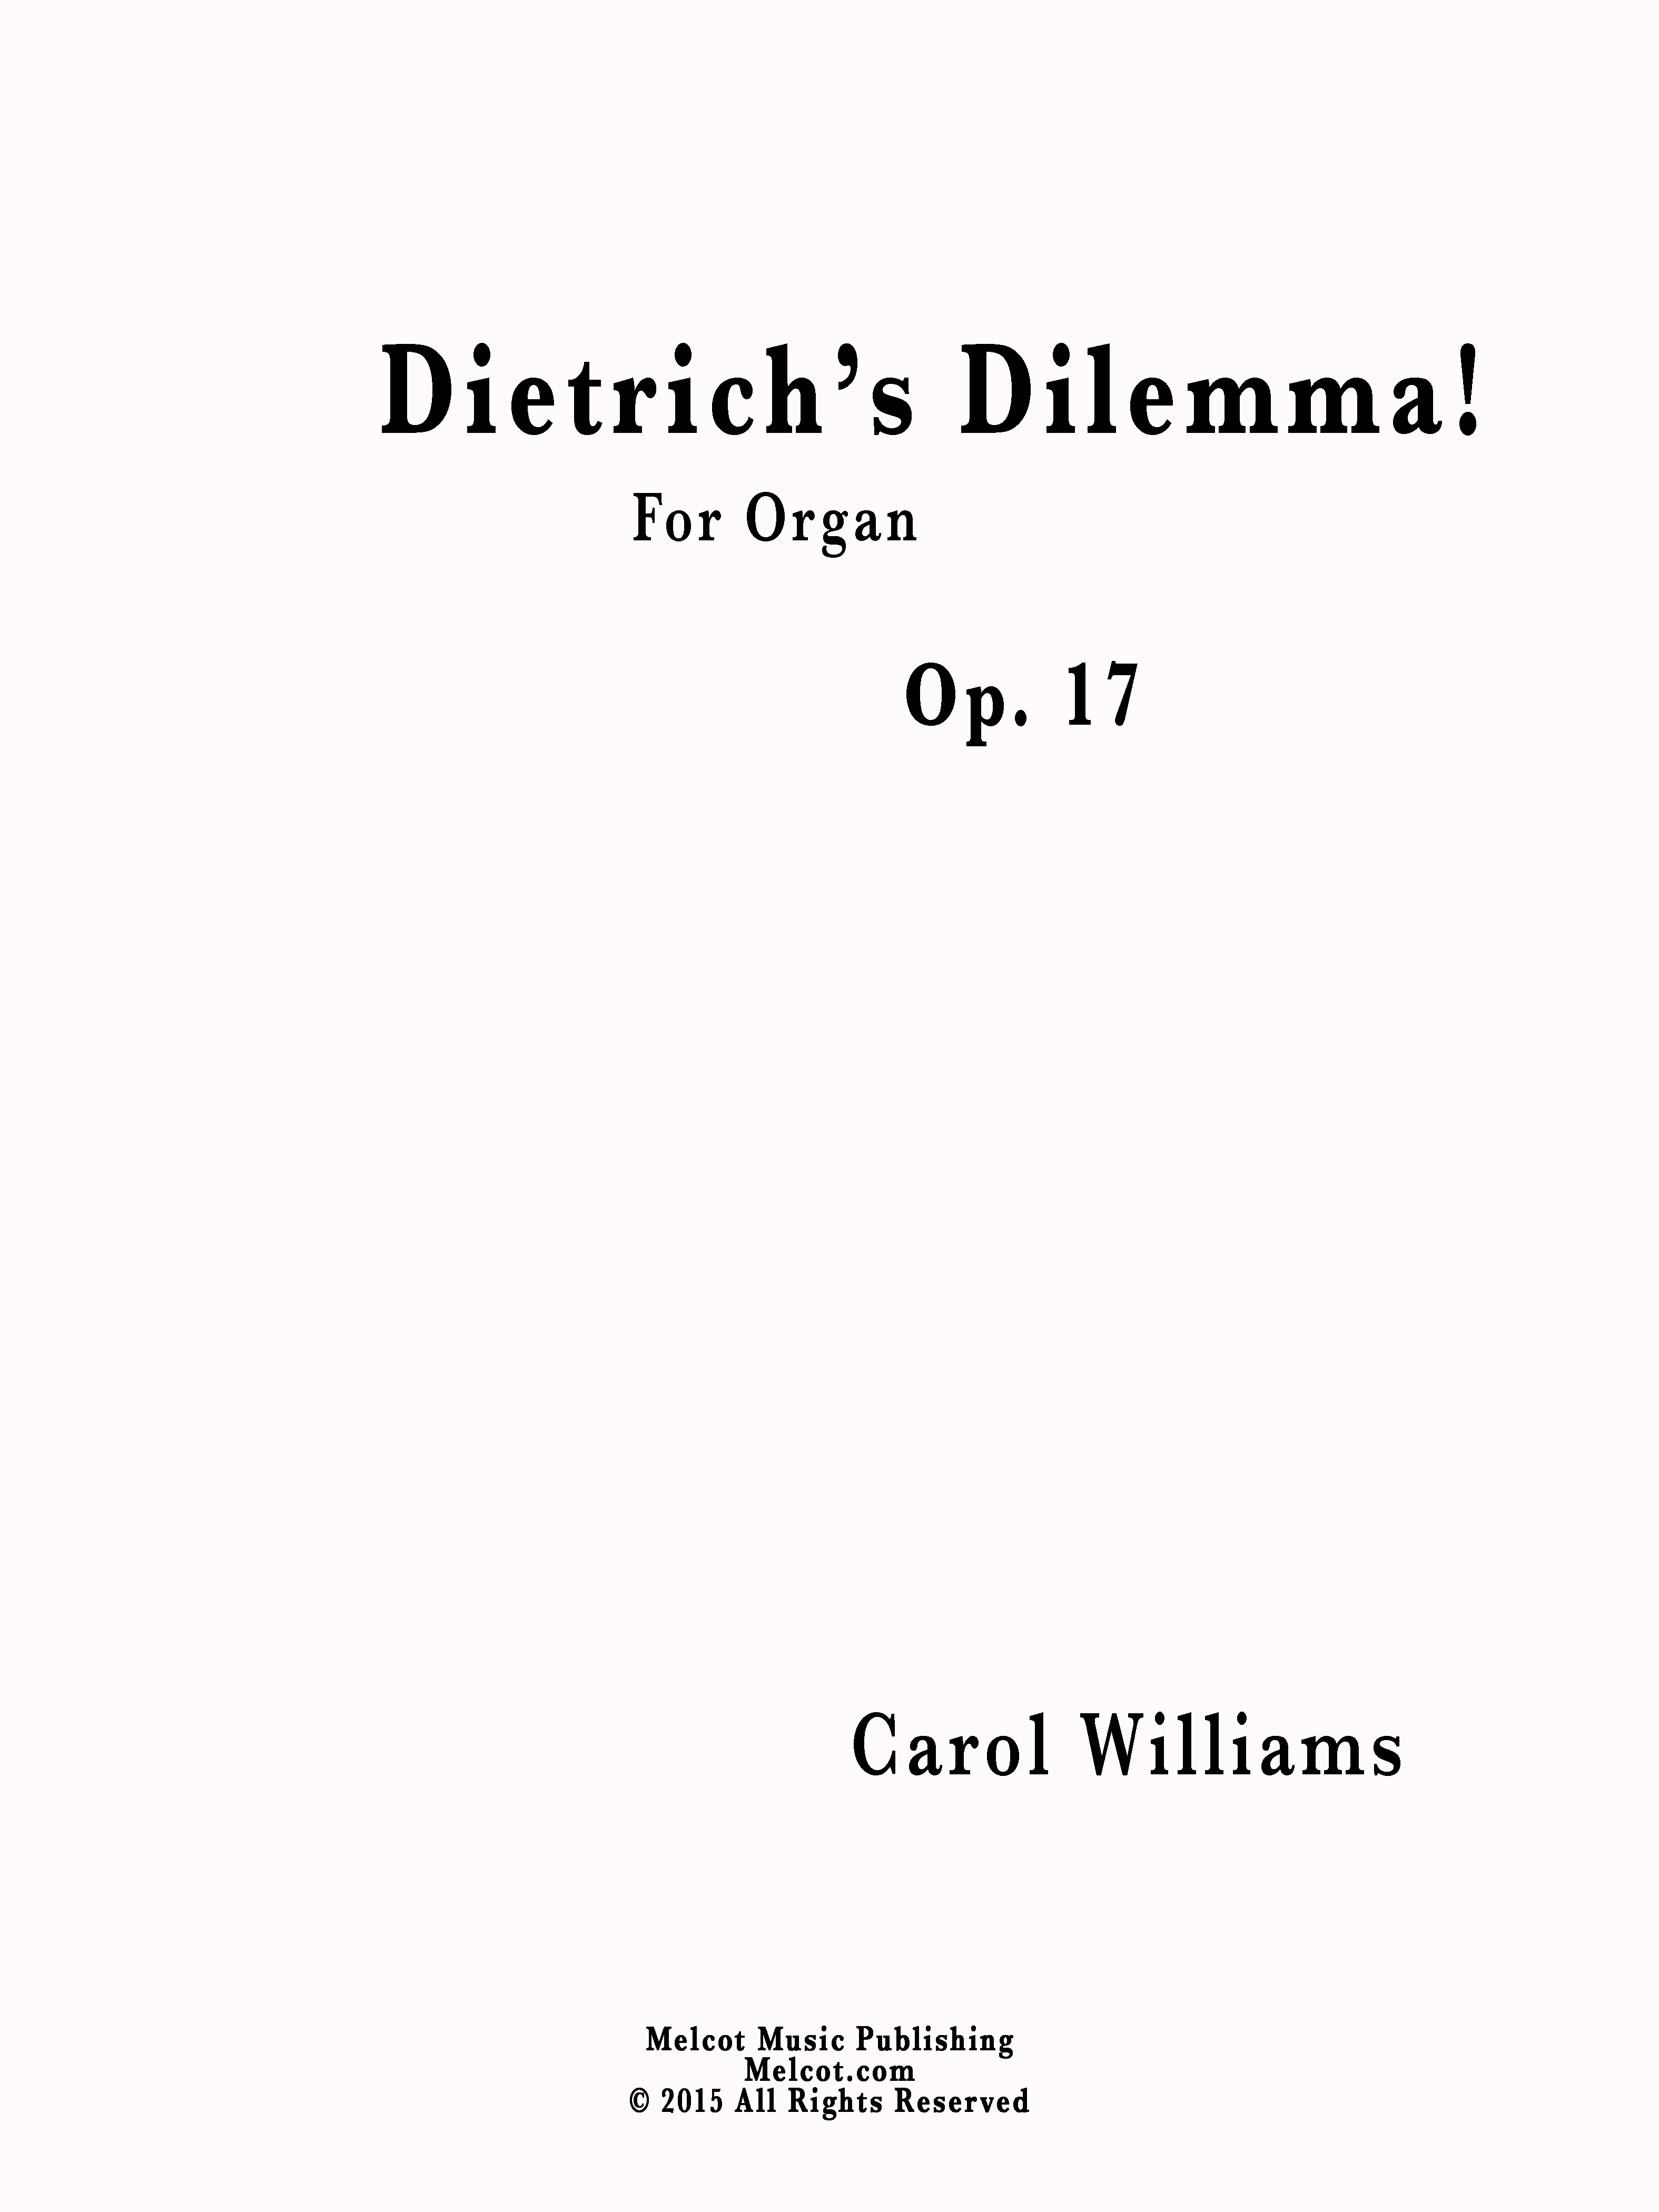 Dietrich's Dilemma